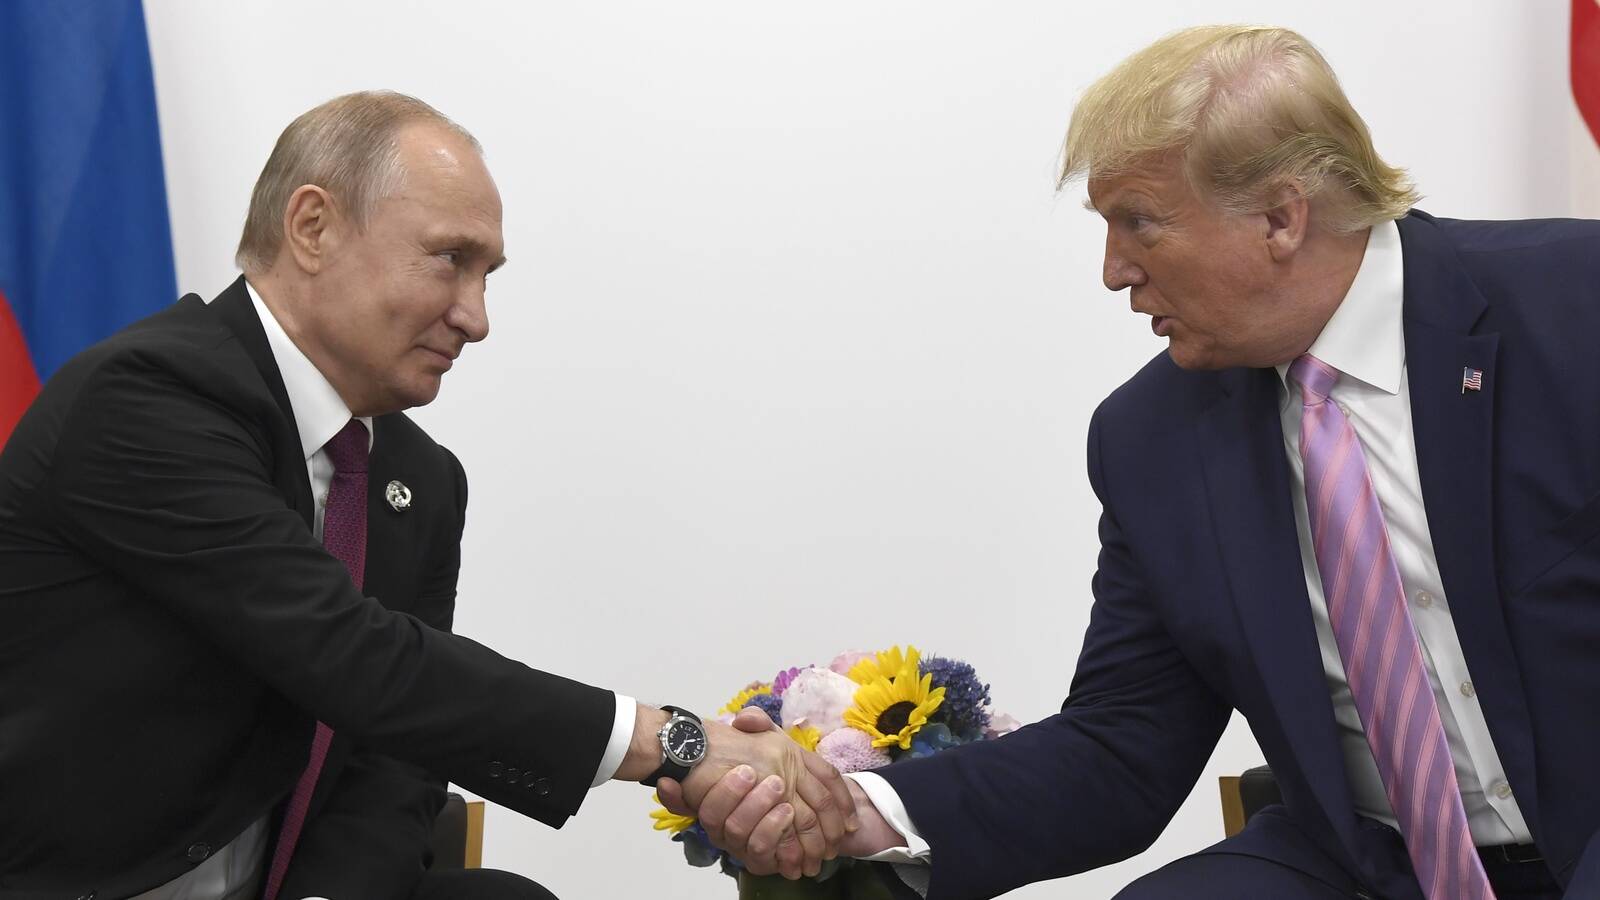 “USA positsioon seoses Ukrainas toimuva sõjaga võib Trumpi tõttu muutuda. Too on seda ka korduvalt ja avalikult lubanud. Seda eurooplased kardavad. Seda enam, et oma arust diilitegemise geeniuse esimeseks valikuks võib suure tõenäosusega osutuda just Putin. Too aga Trumpi võitu valimistel ootabki,” kirjutab Raivo Vare. Foto pärineb 2019. aastal Osakas peetud G20 tippkohtumiselt.